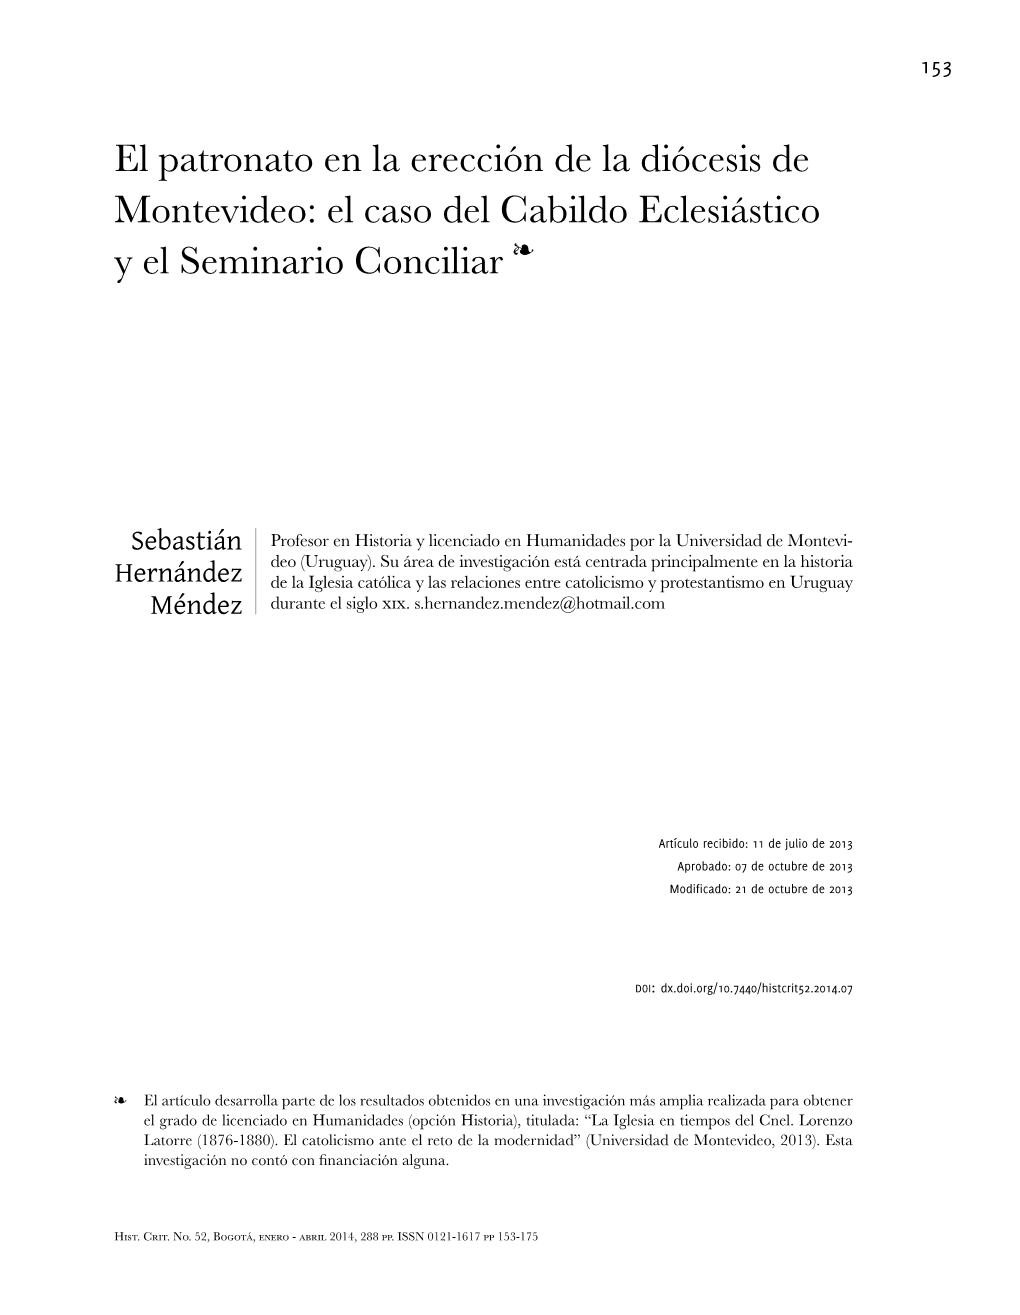 El Patronato En La Erección De La Diócesis De Montevideo: El Caso Del Cabildo Eclesiástico Y El Seminario Conciliar Ï